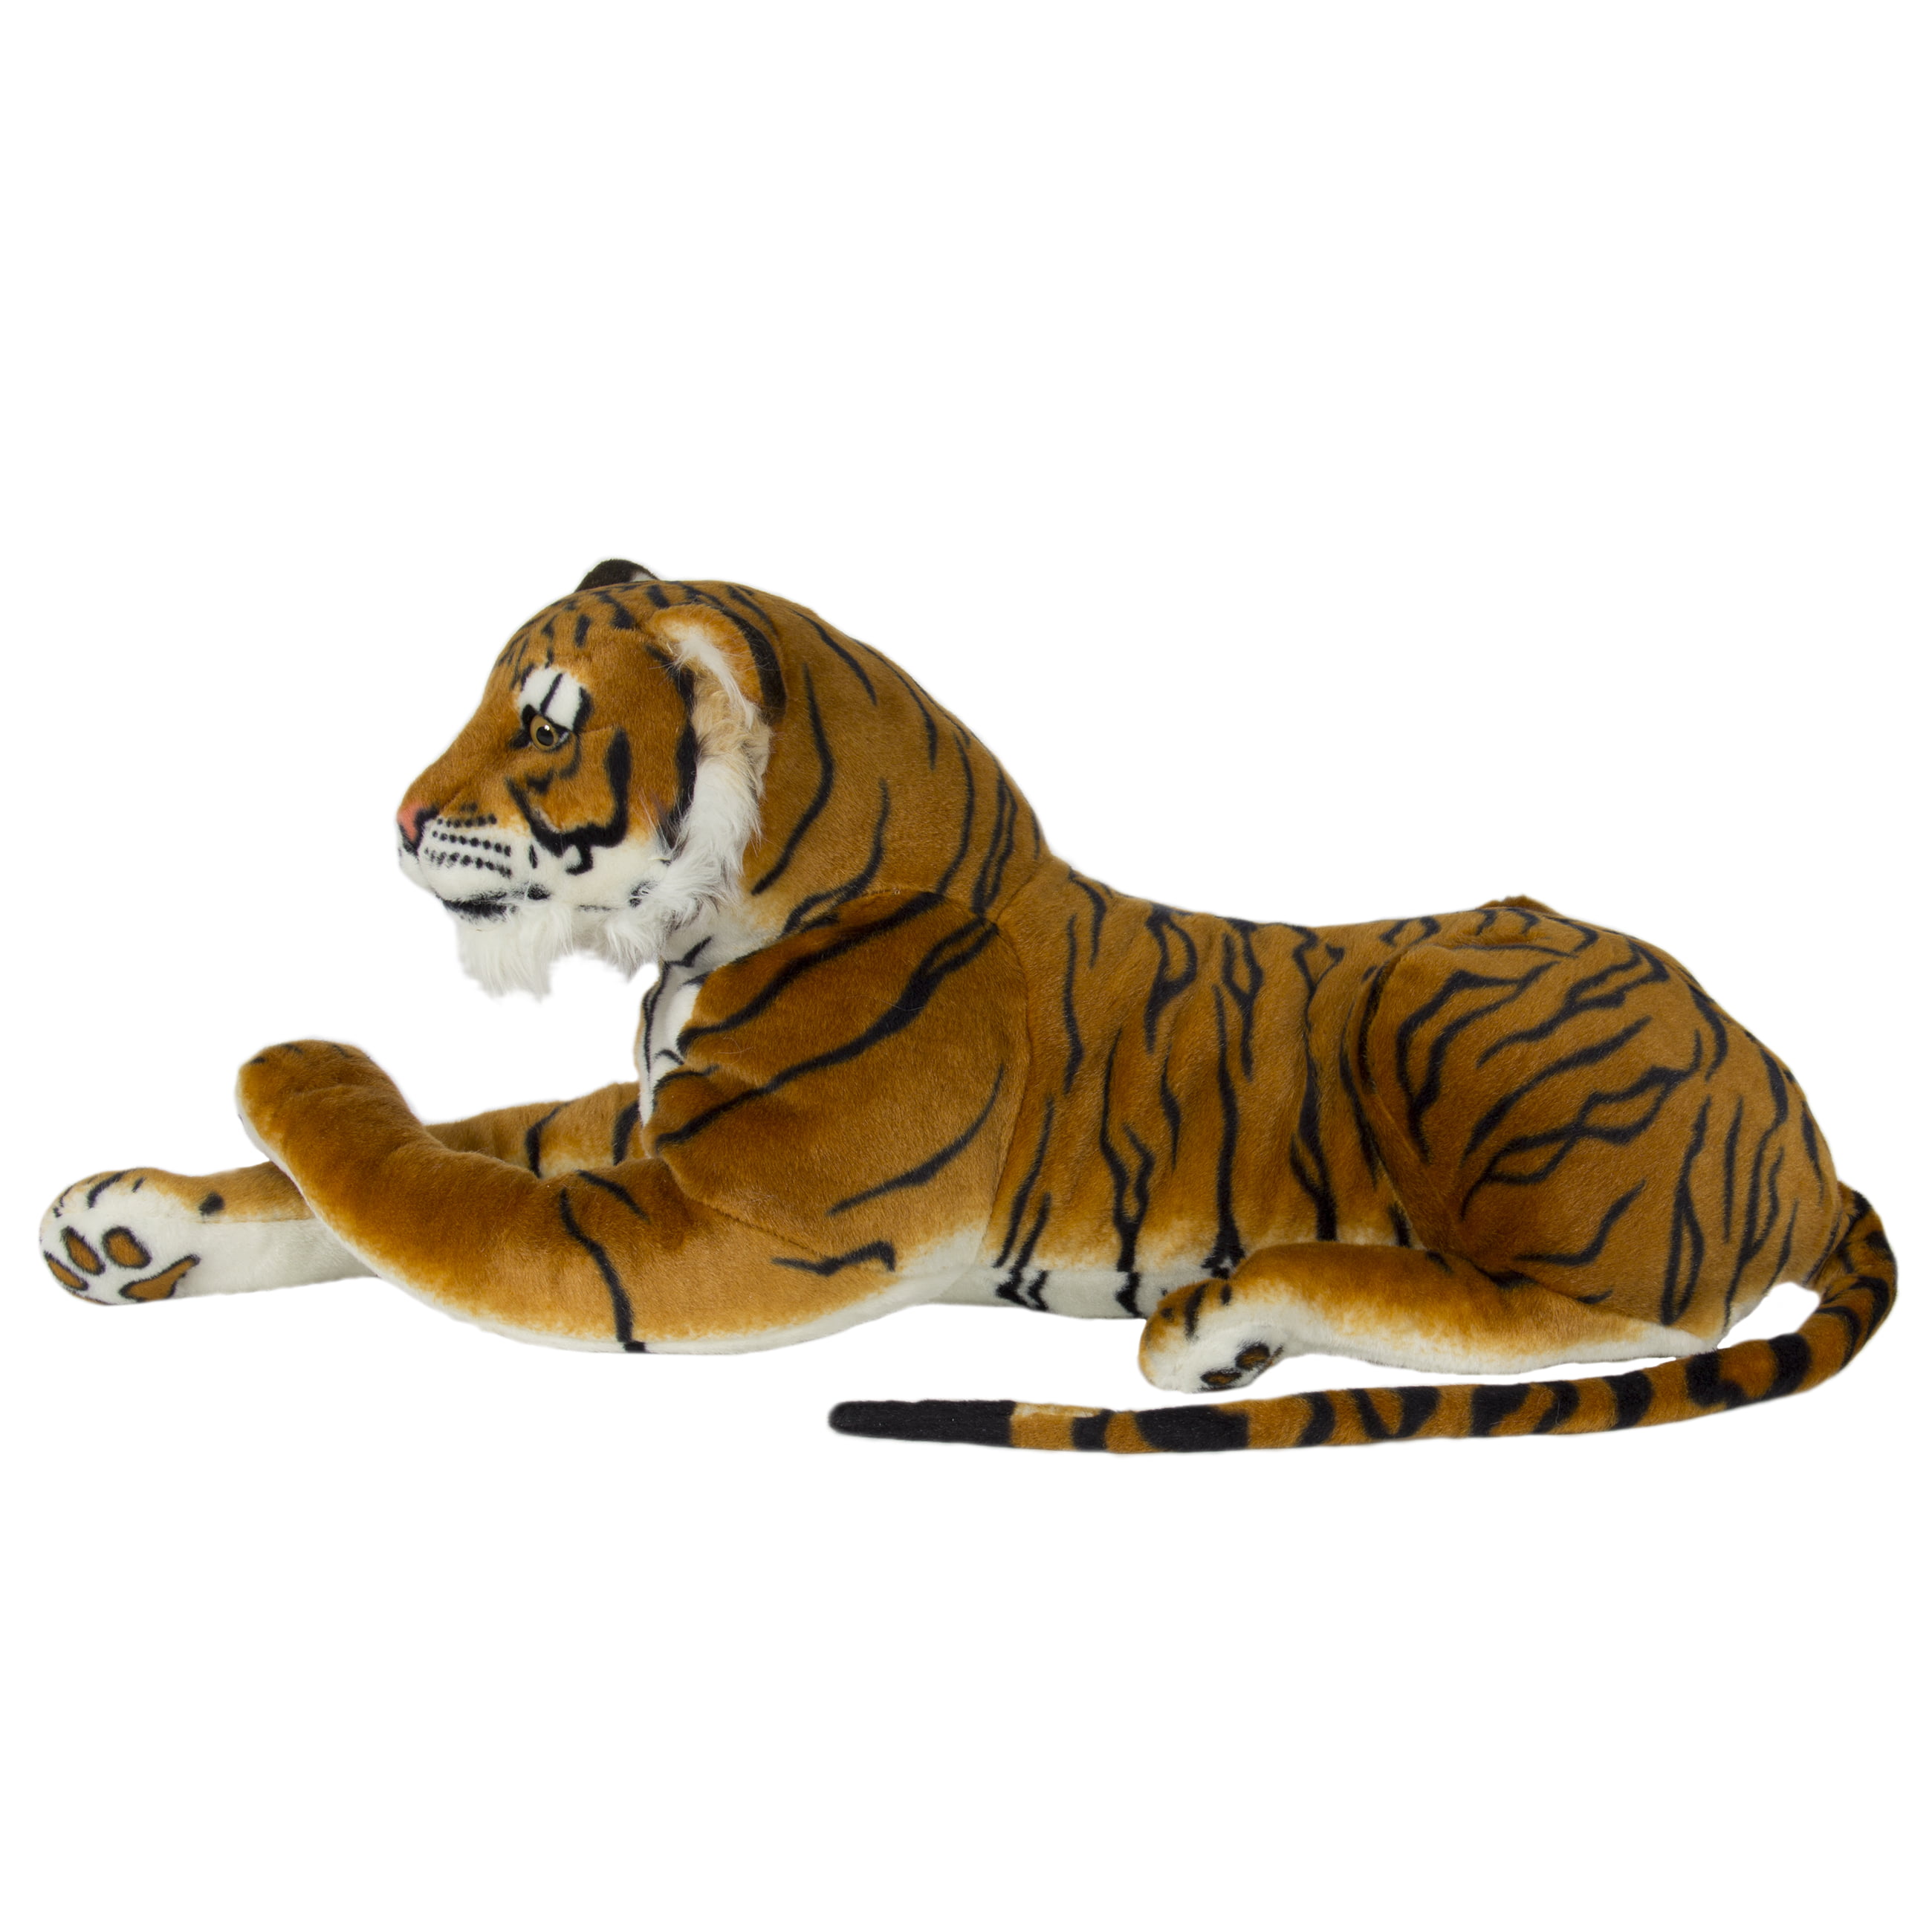 jumbo stuffed tiger